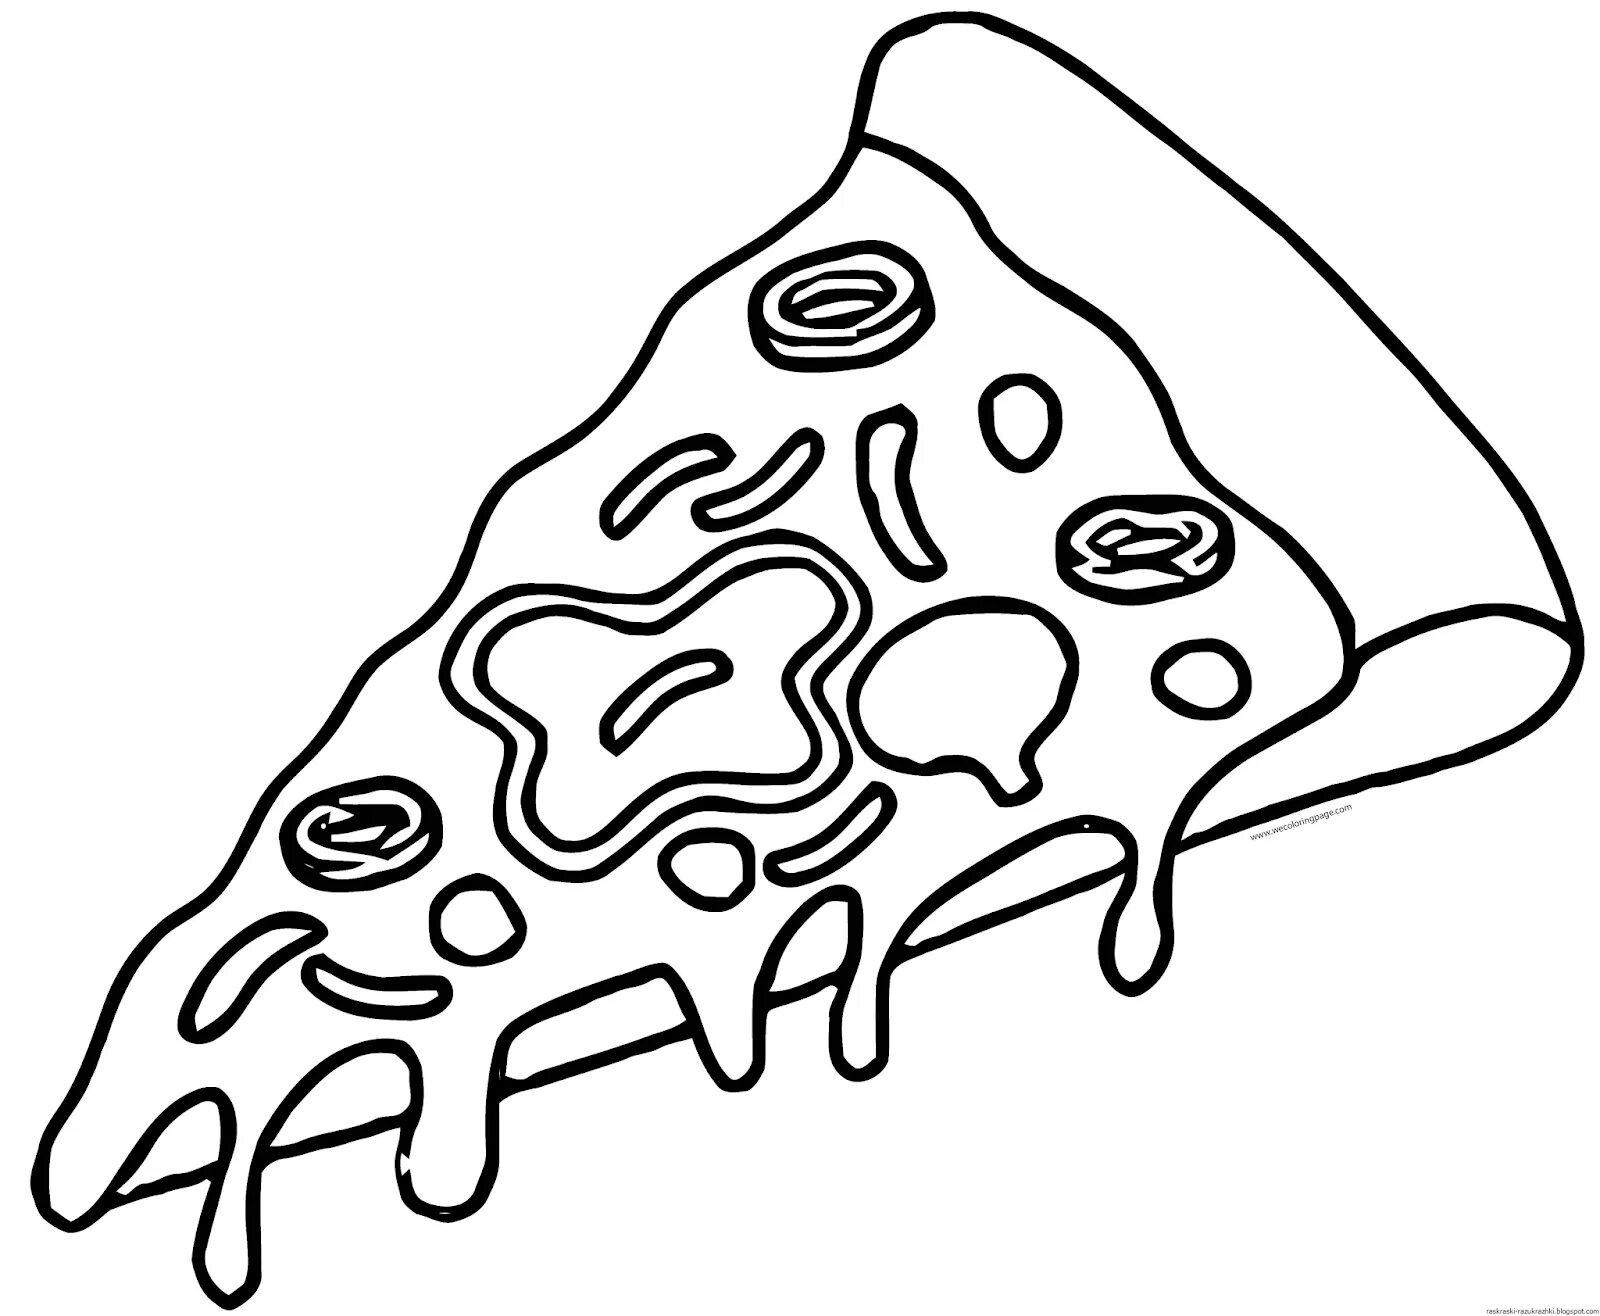 Pizza slice #5